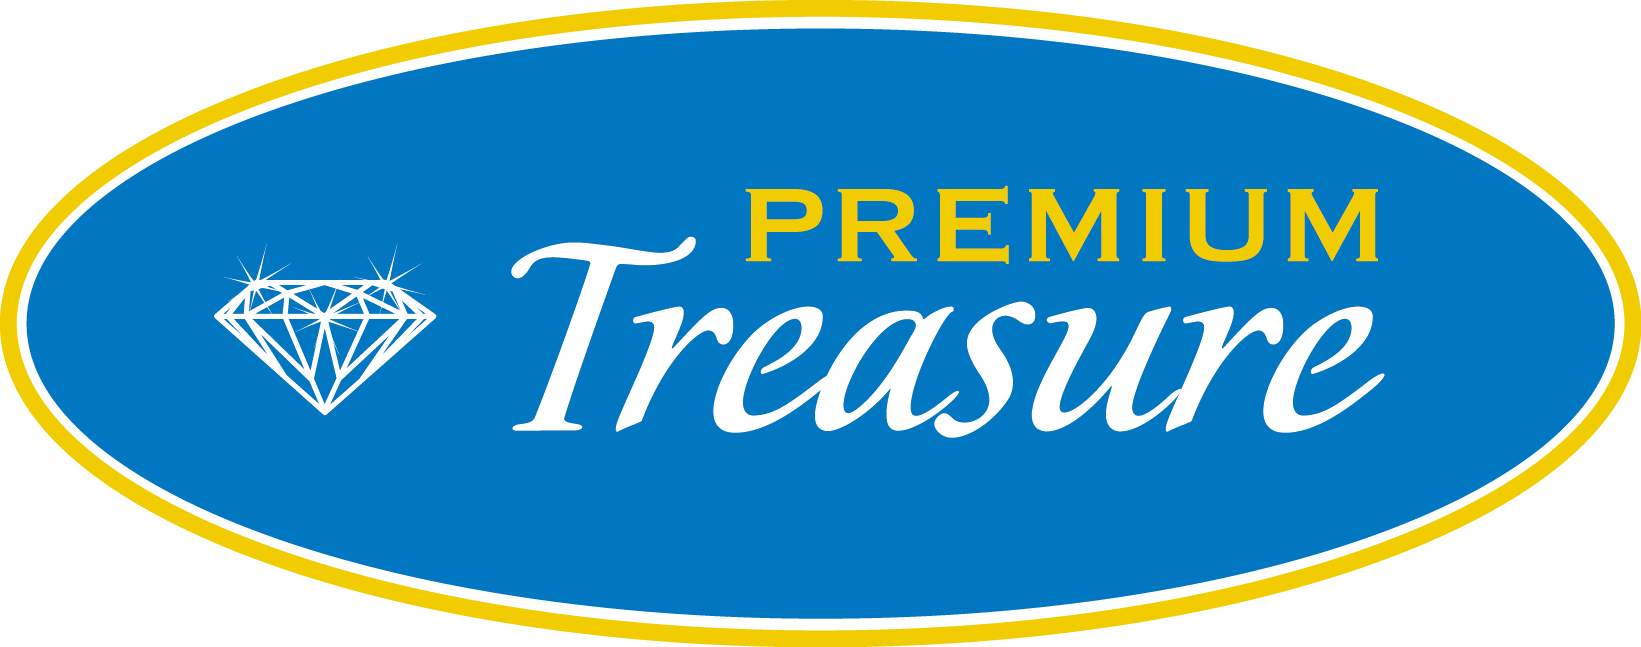 Premium Treasure Logo